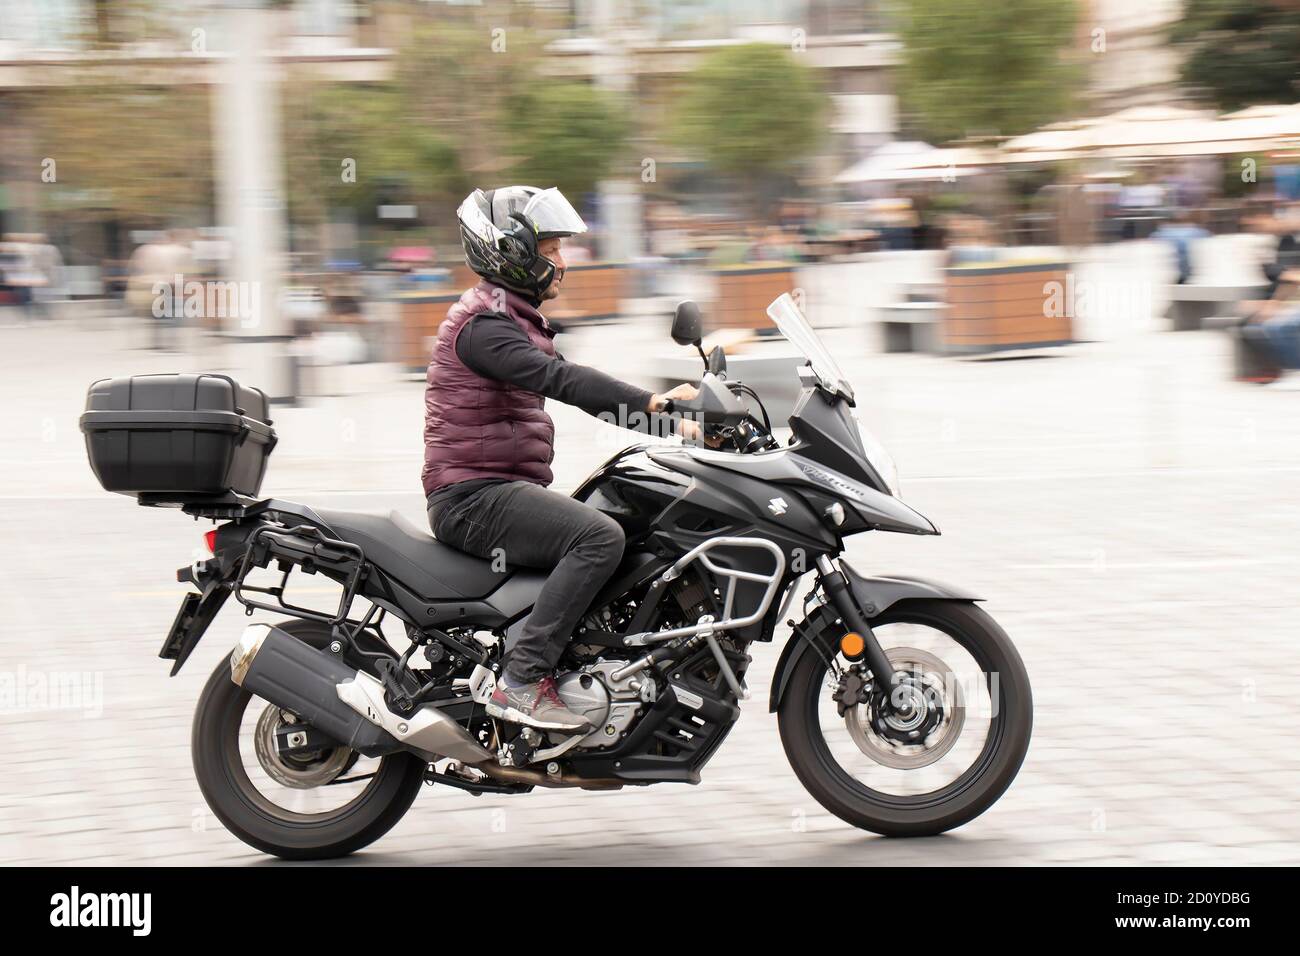 Belgrado, Serbia - 02 de octubre de 2020: Hombre montando una moto rápida con la caja trasera en calle vacía por plaza de la ciudad, barrido de tiro Foto de stock